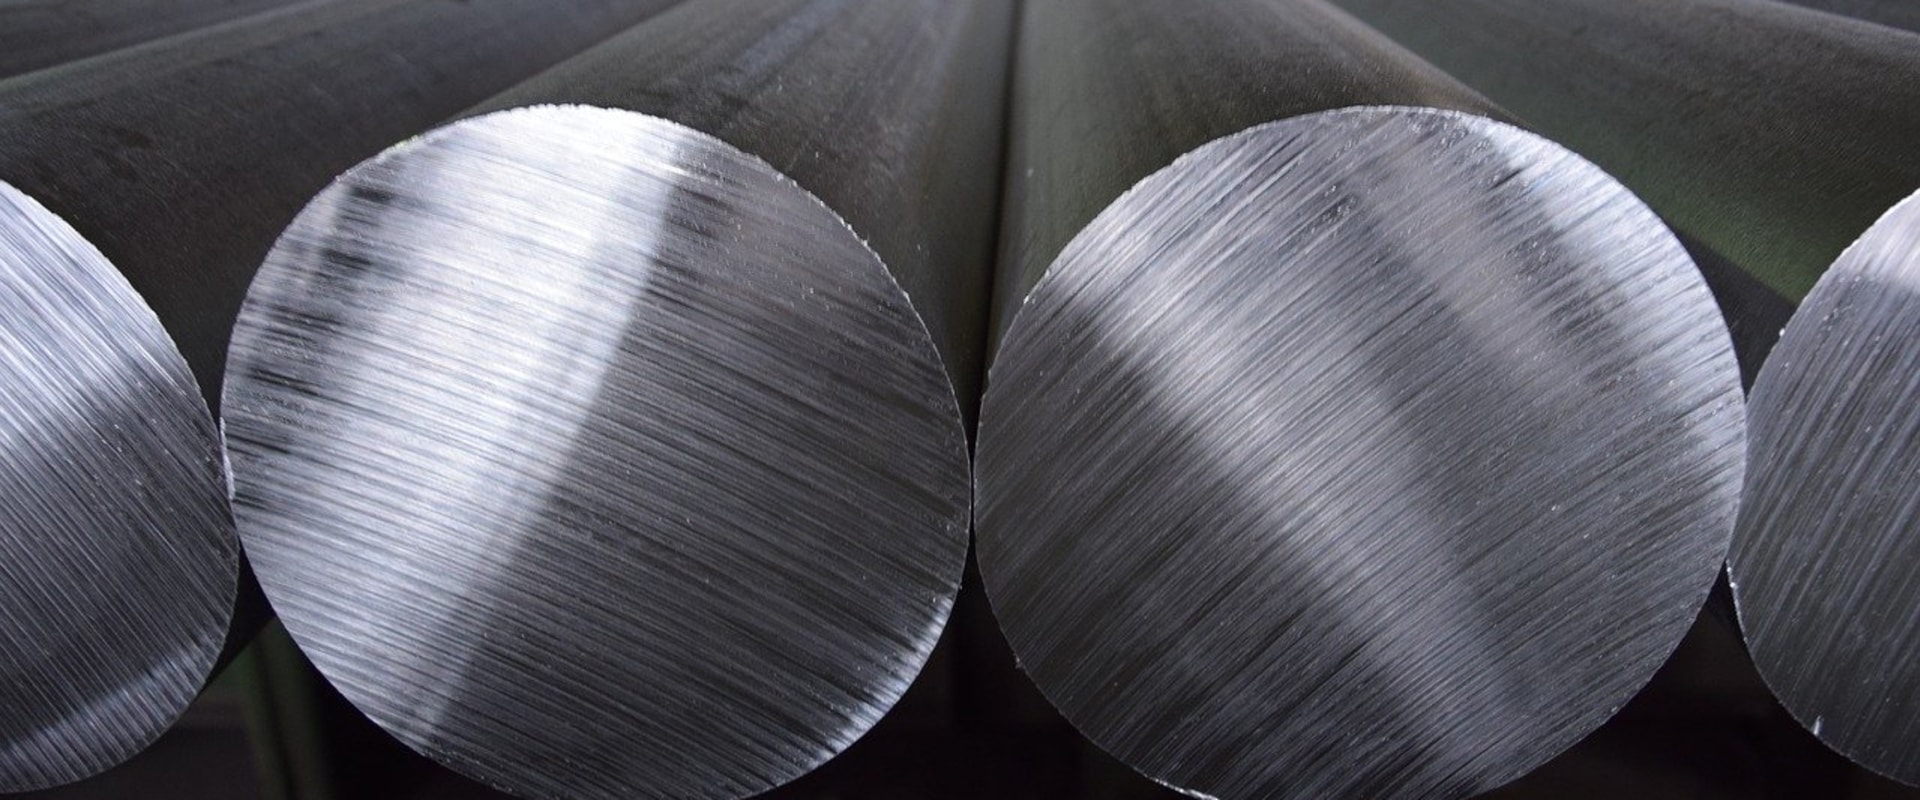 Waar wordt aluminium vervaardigd?